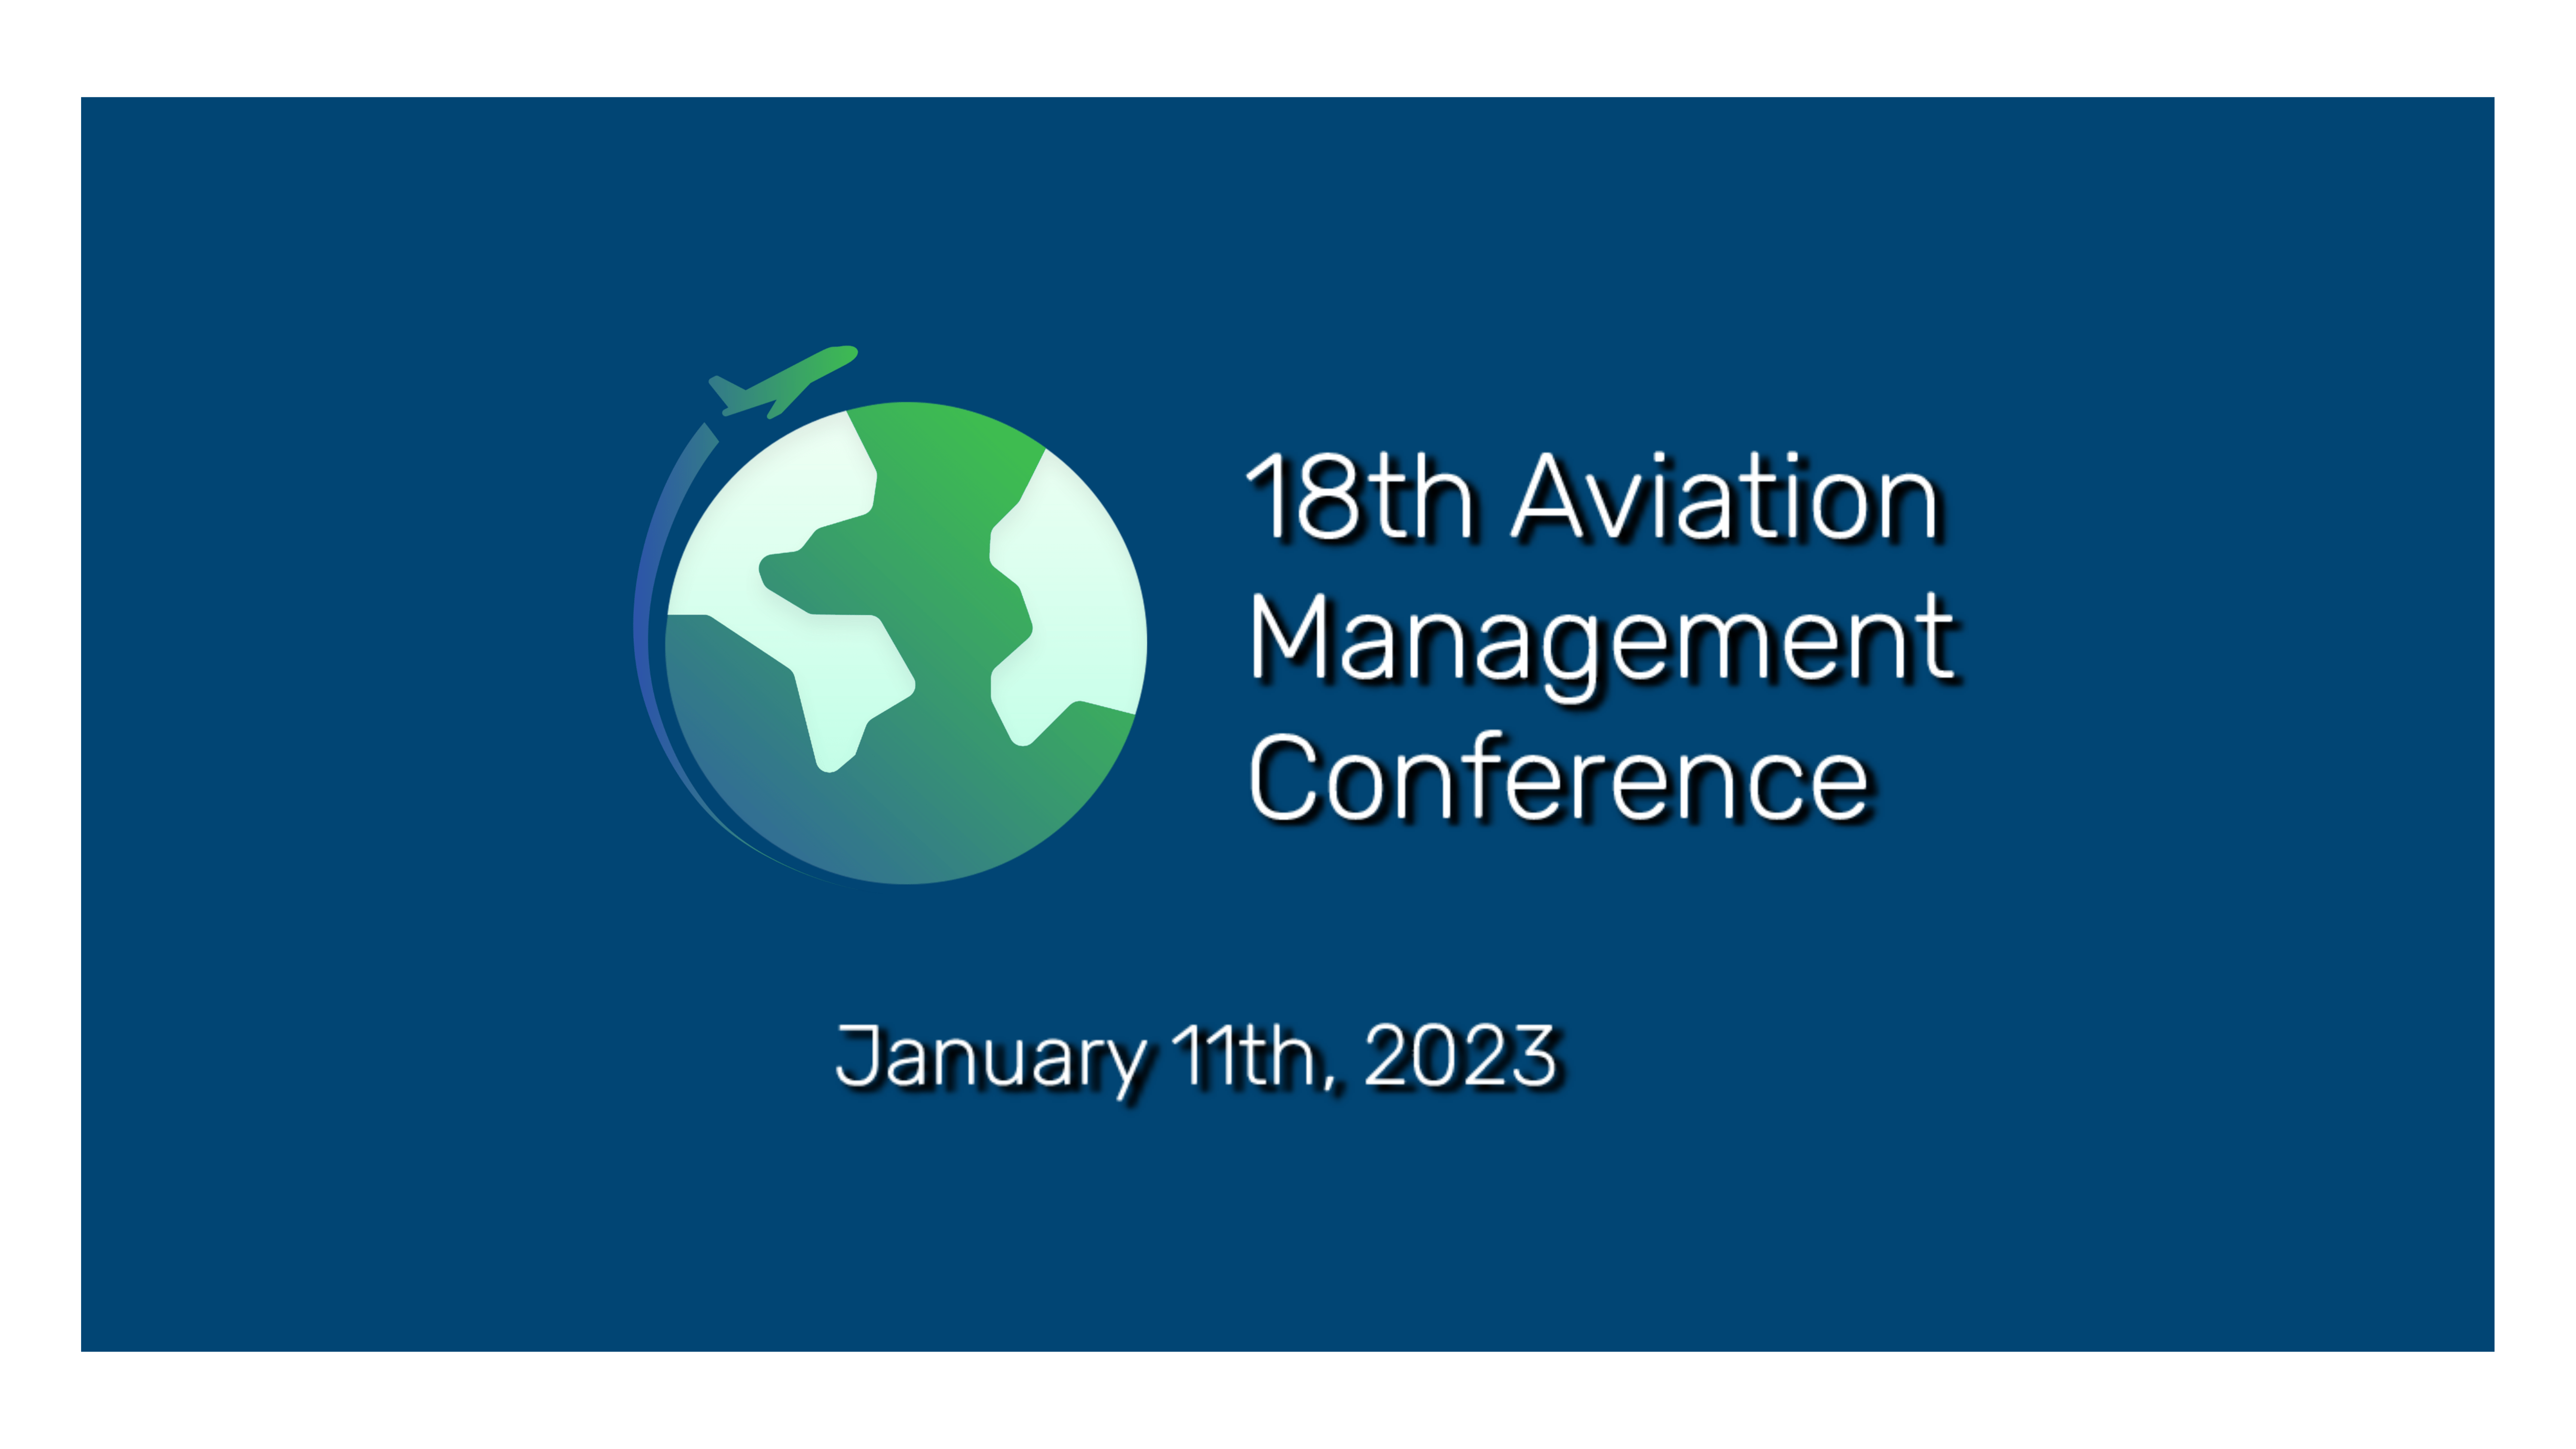 The Journey of Transition - Το 18ο Συνέδριο Διαχείρισης Αεροπορίας